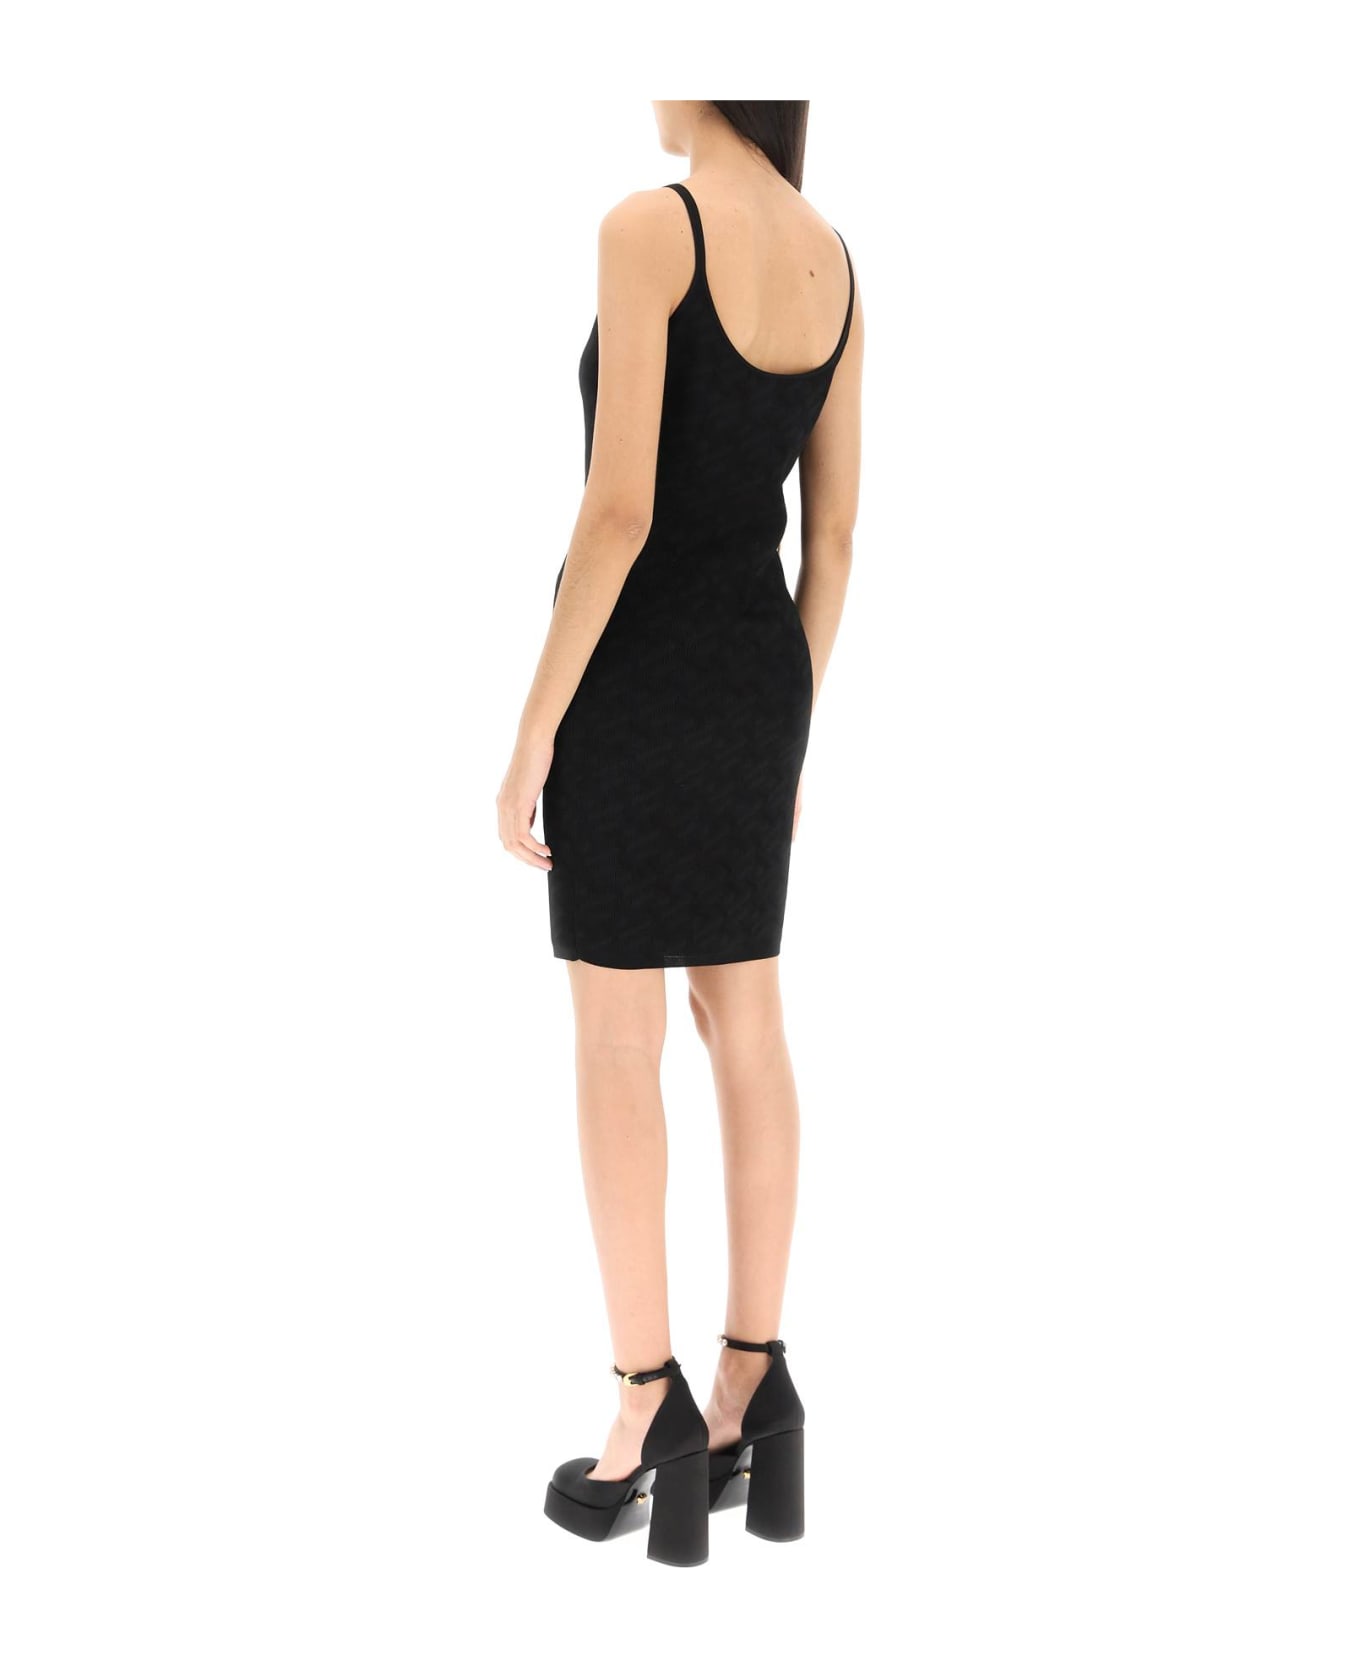 Versace 'la Greca' Knitted Mini Dress - Black